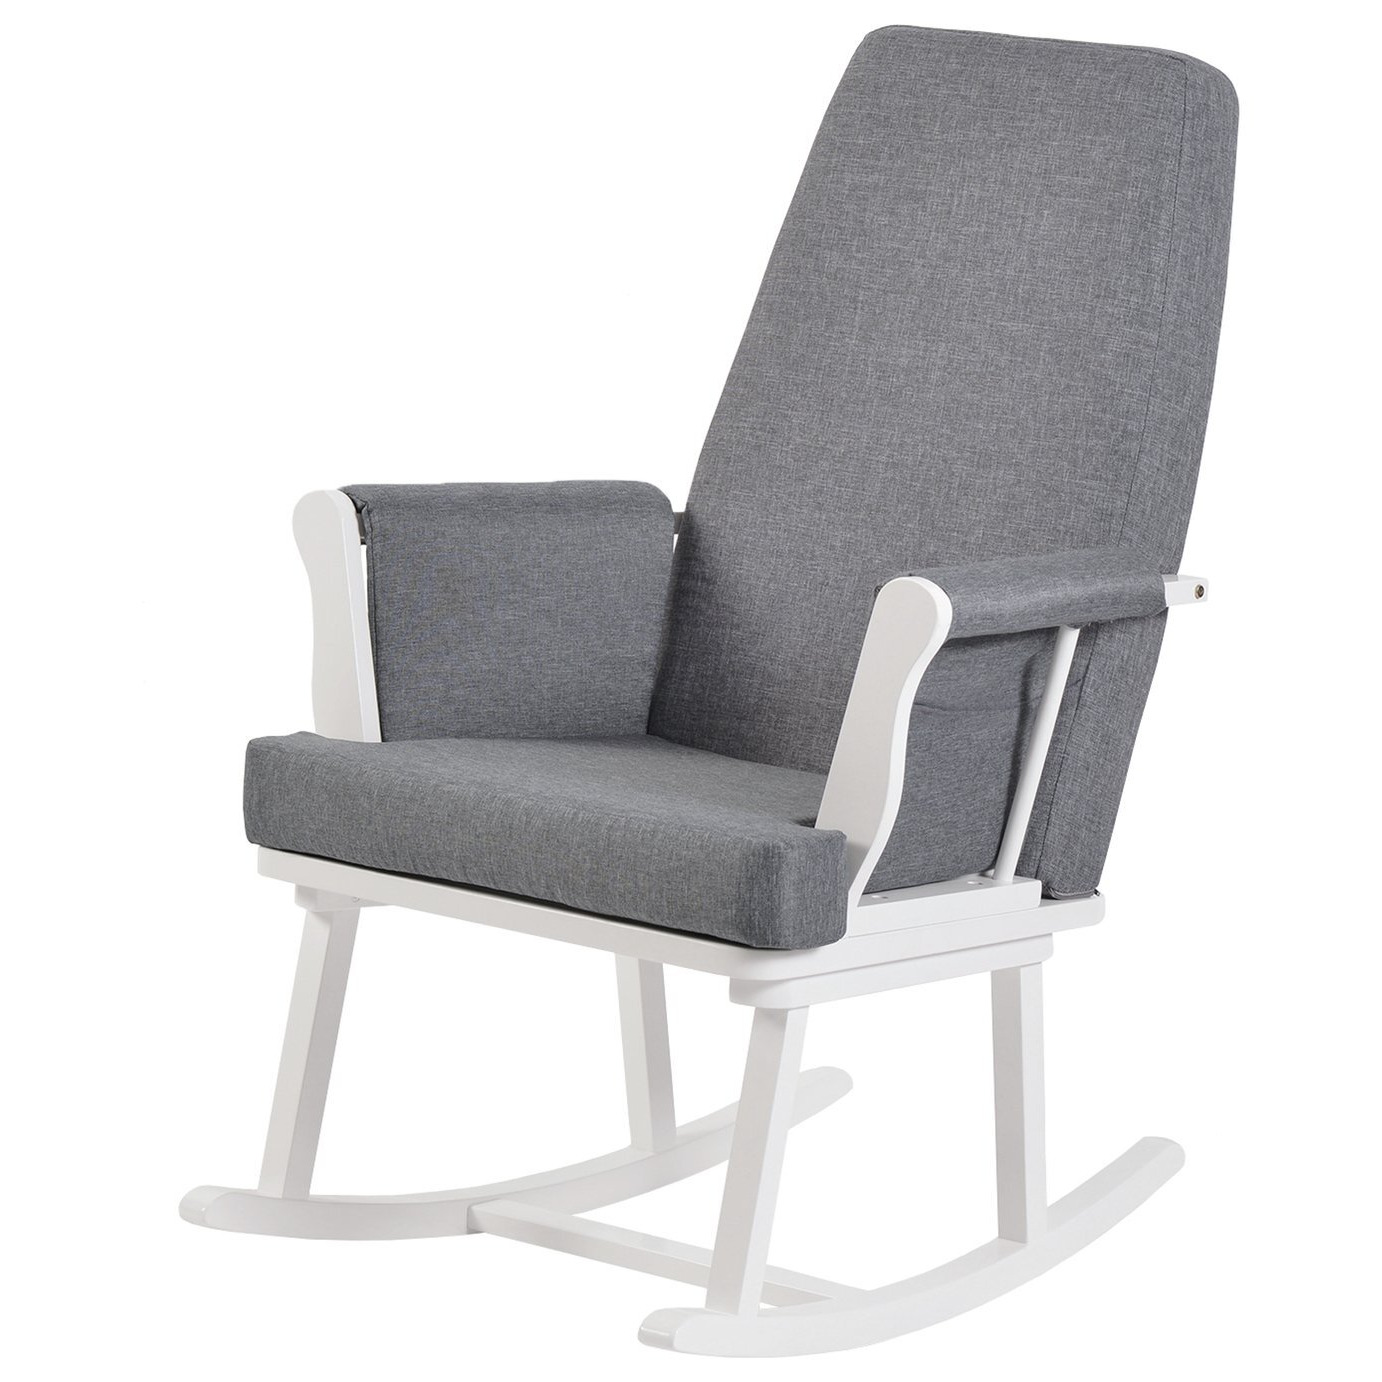 KUB Haldon Rocking Nursing Chair - White - image 1